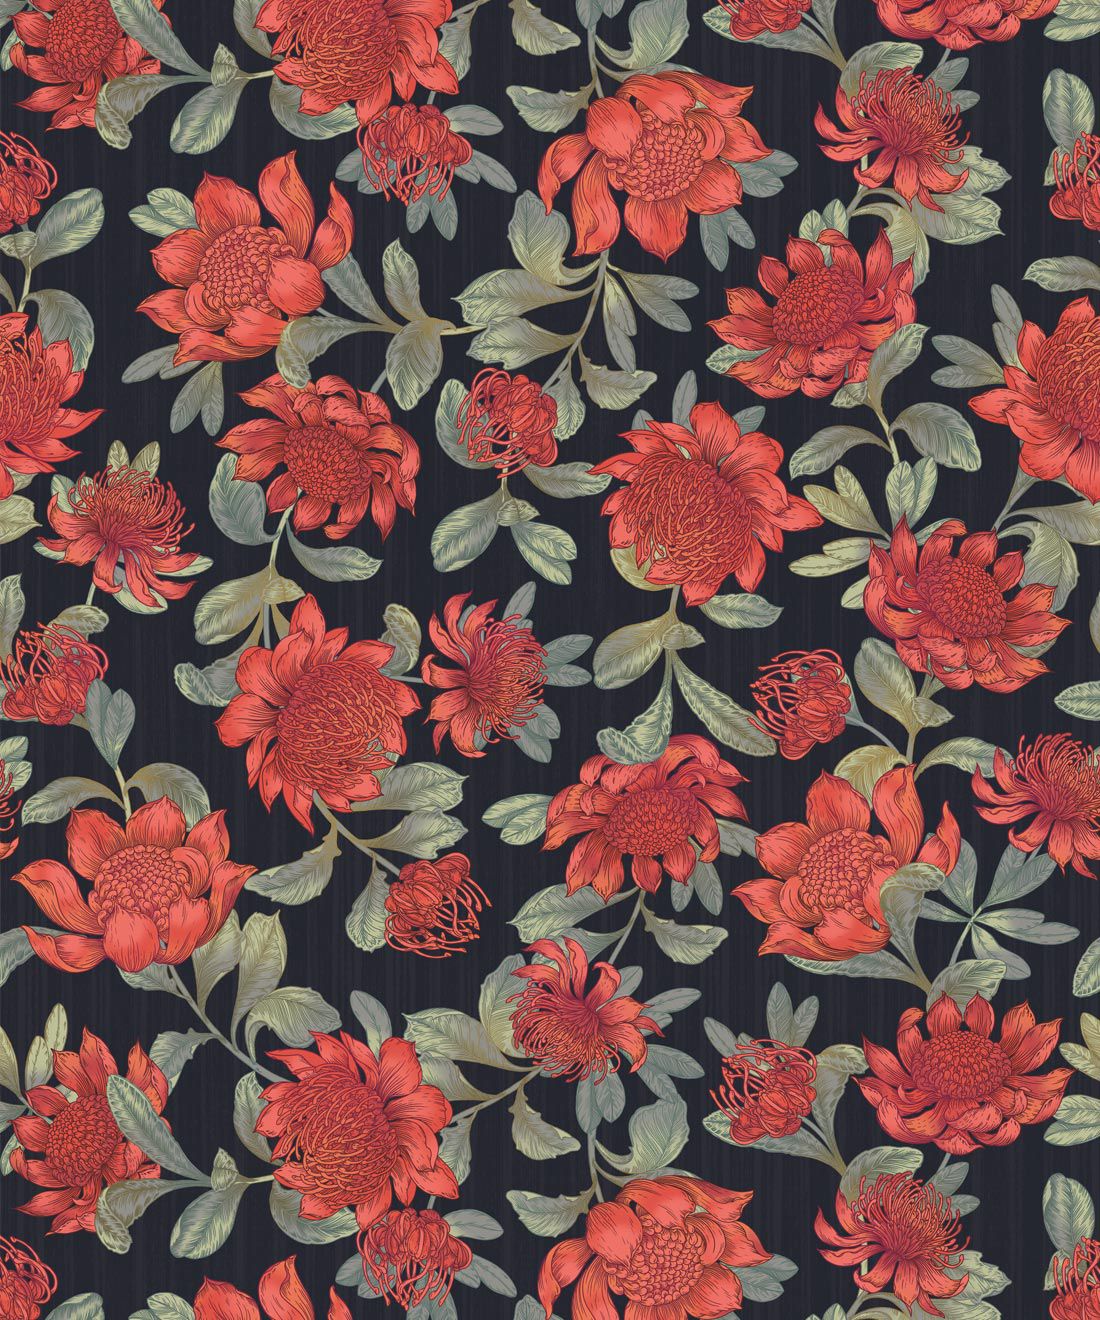 Waratah Wallpaper • Vintage Floral Wallpaper Europe